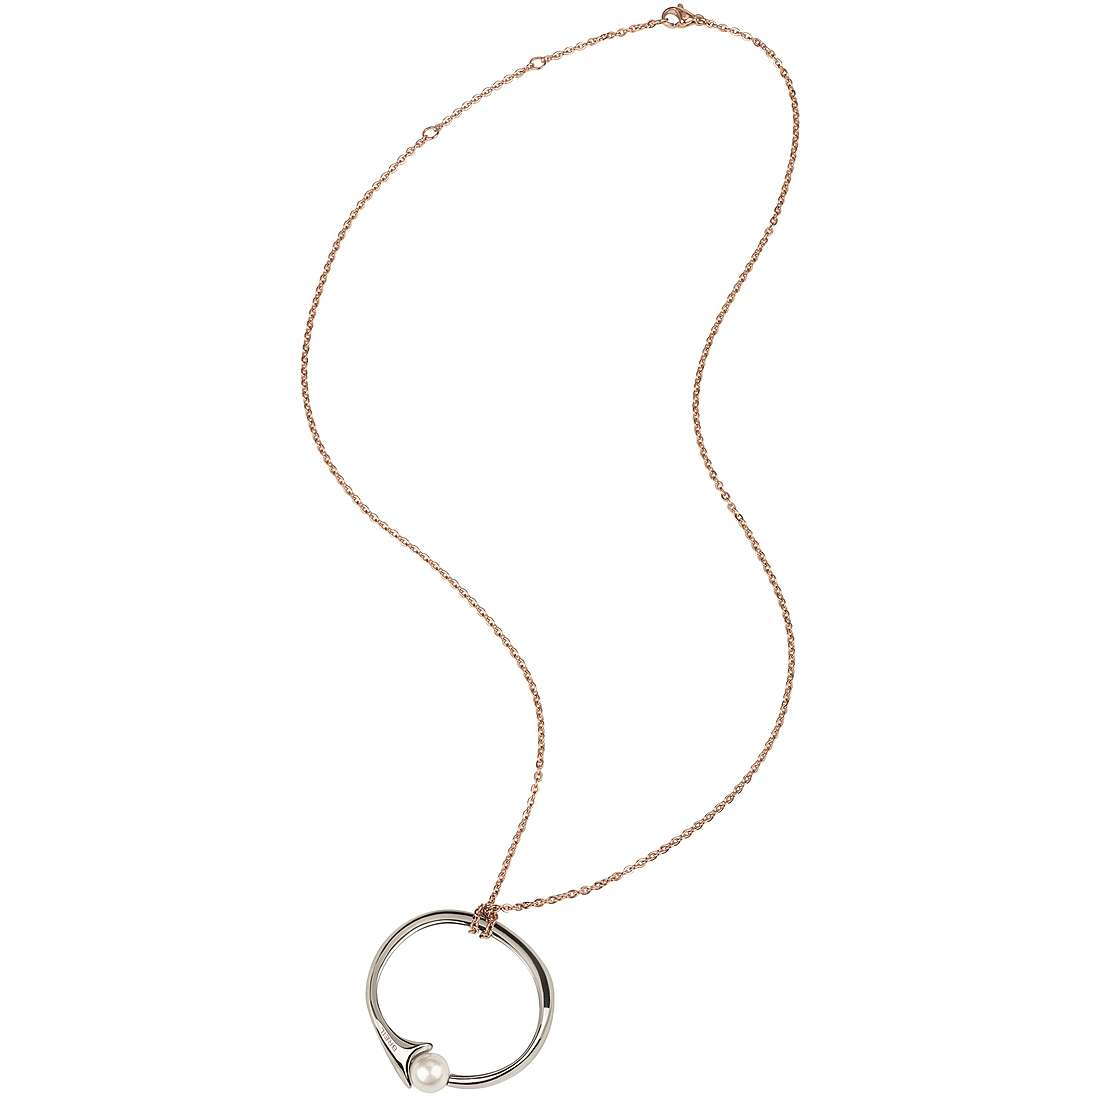 Collana donna Breil Venere TJ2380 realizzata in acciaio lucido e perla bianca e catena in acciaio ip oro rosa. Collana di lunghezza regolabile a 56 cm, 53 cm e 50 cm. Questo gioiello è caratterizzato dalla possibilità di essere indossato come collana o bangle rigido.